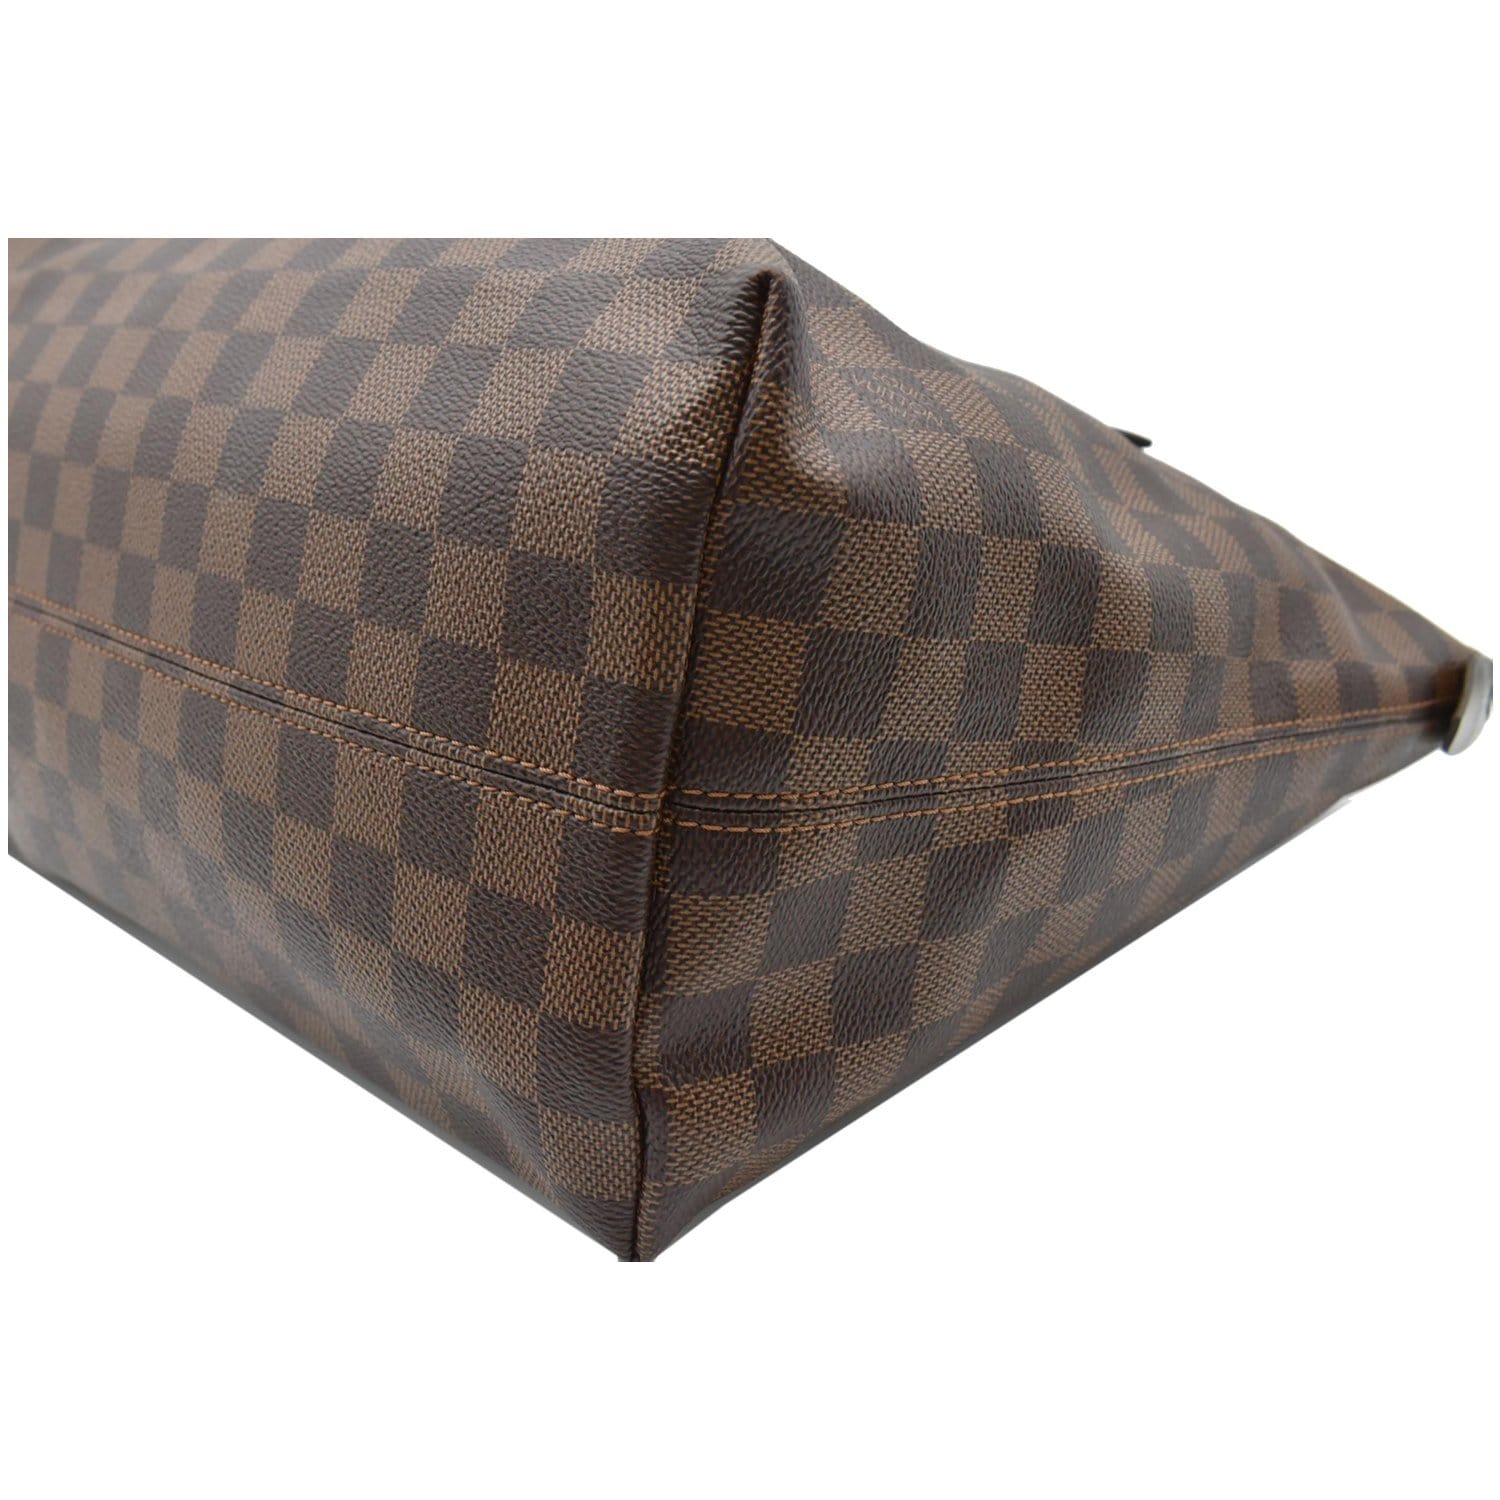 Louis Vuitton Iena MM Damier Azur Shoulder Bag by DDH